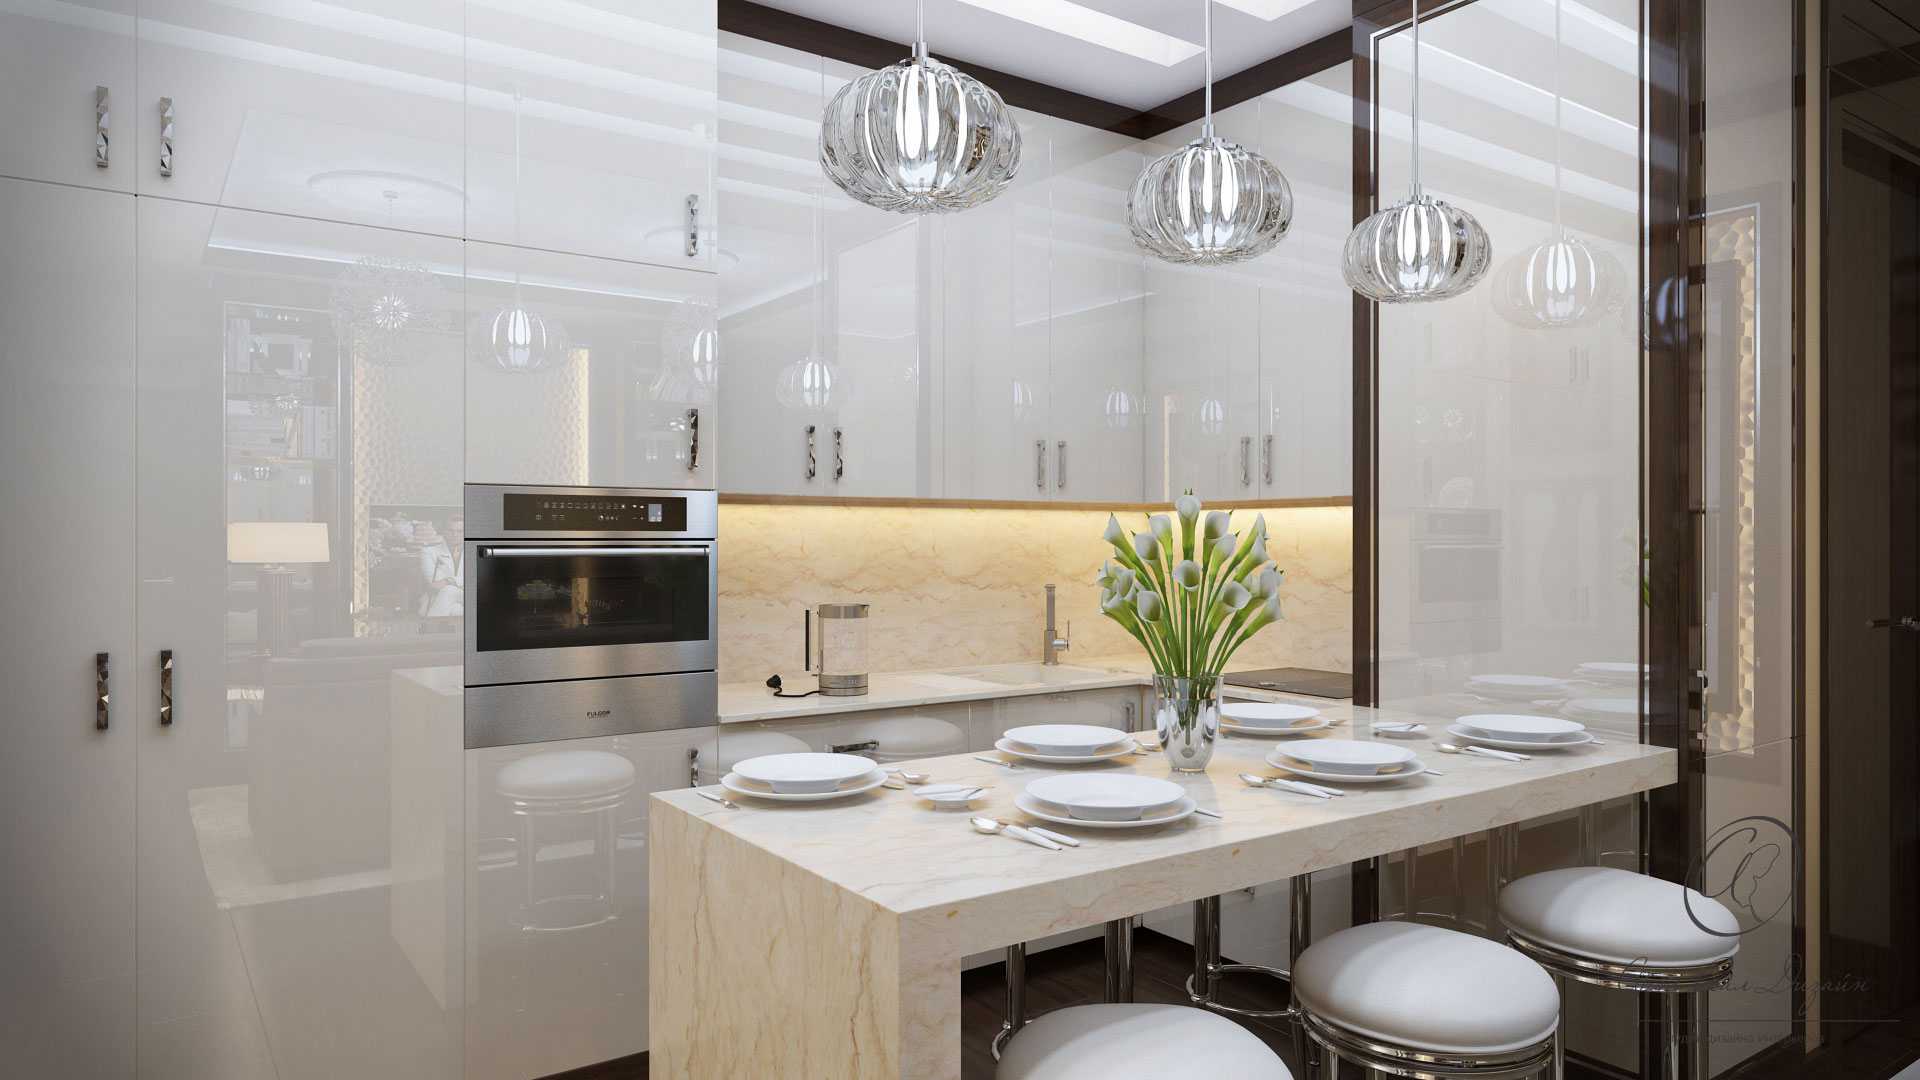 Кухня столовая дизайн интерьера - фото, зонирование, проекты